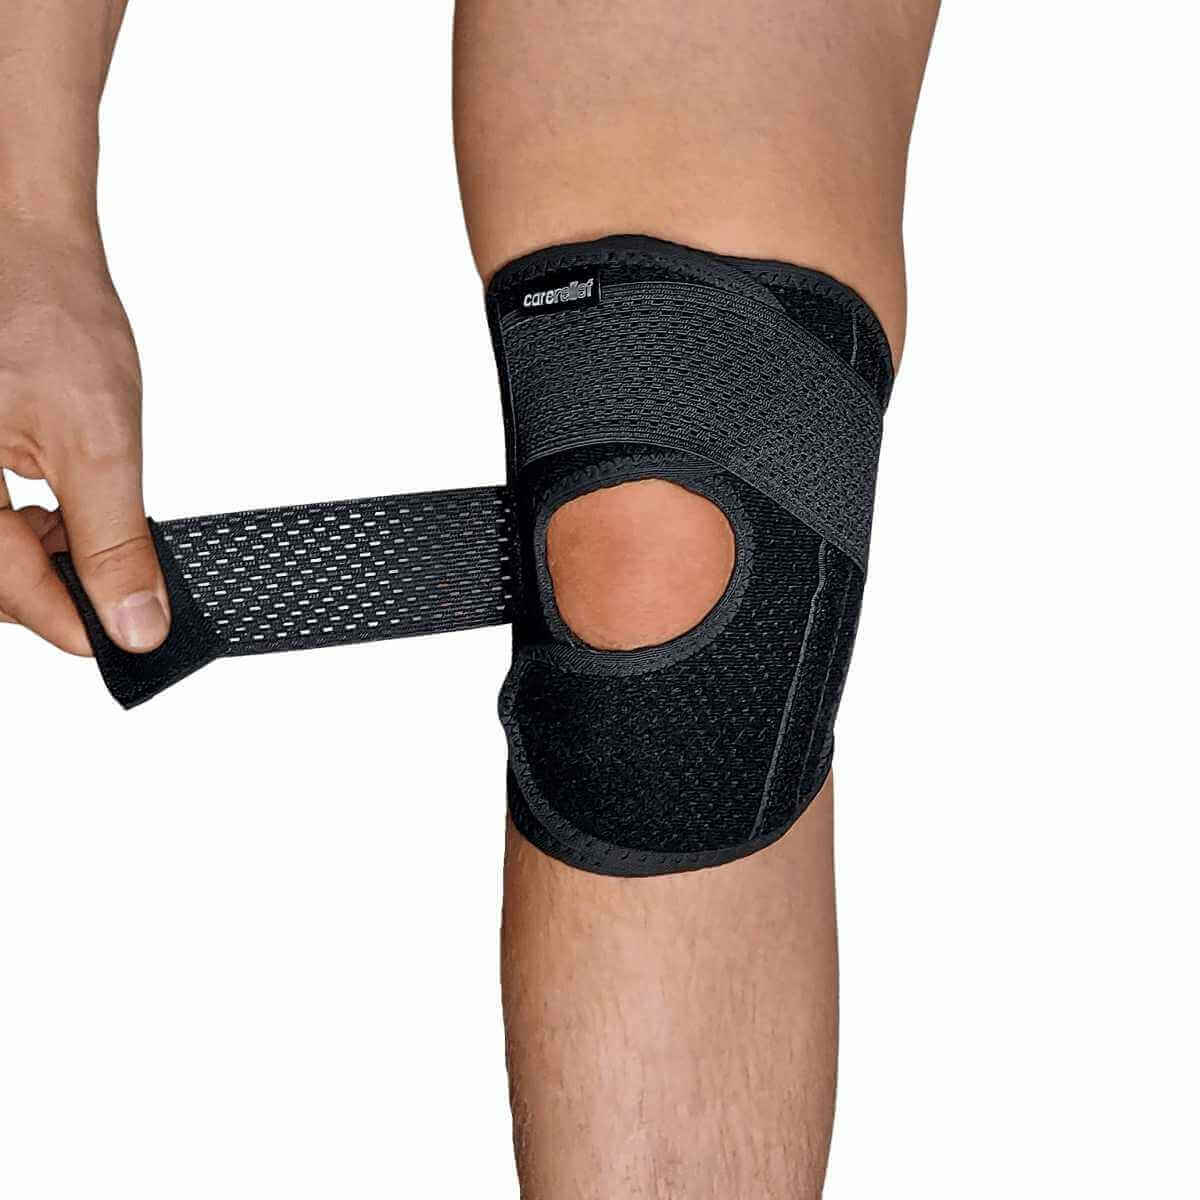 Knæstøtte med stålfjedre/skinner og åben patella, justerbart, 4 str. sort. KN25 er et ultra let knæbind med komfort og støtte til et overbelastet og skadet knæ, springerknæ og menisk.